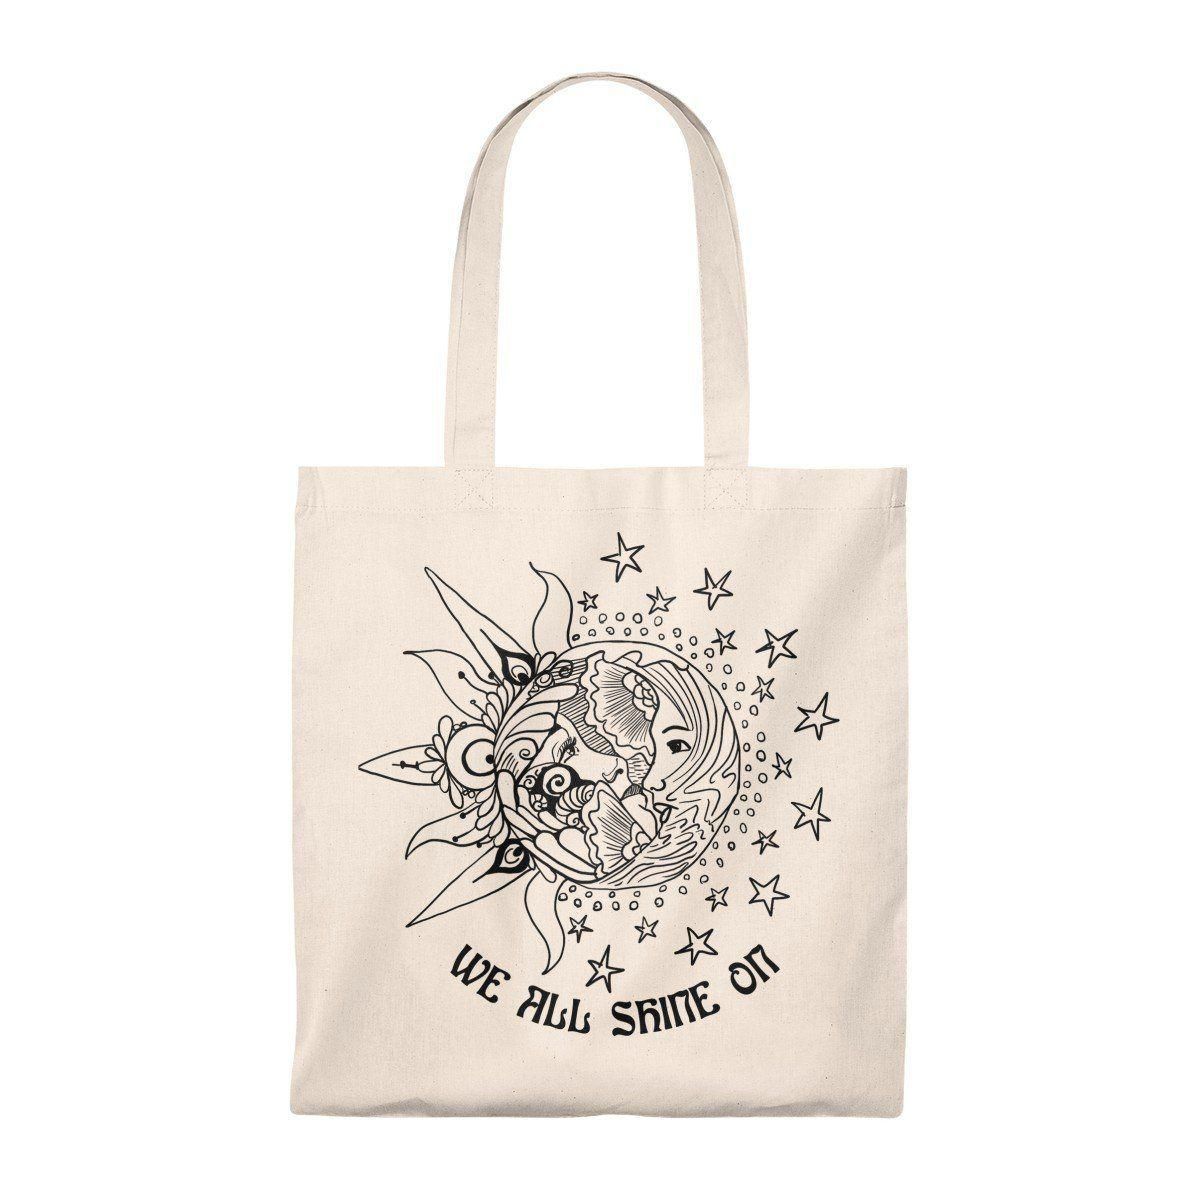 We All Shine On Sun Art Printed Tote Bag